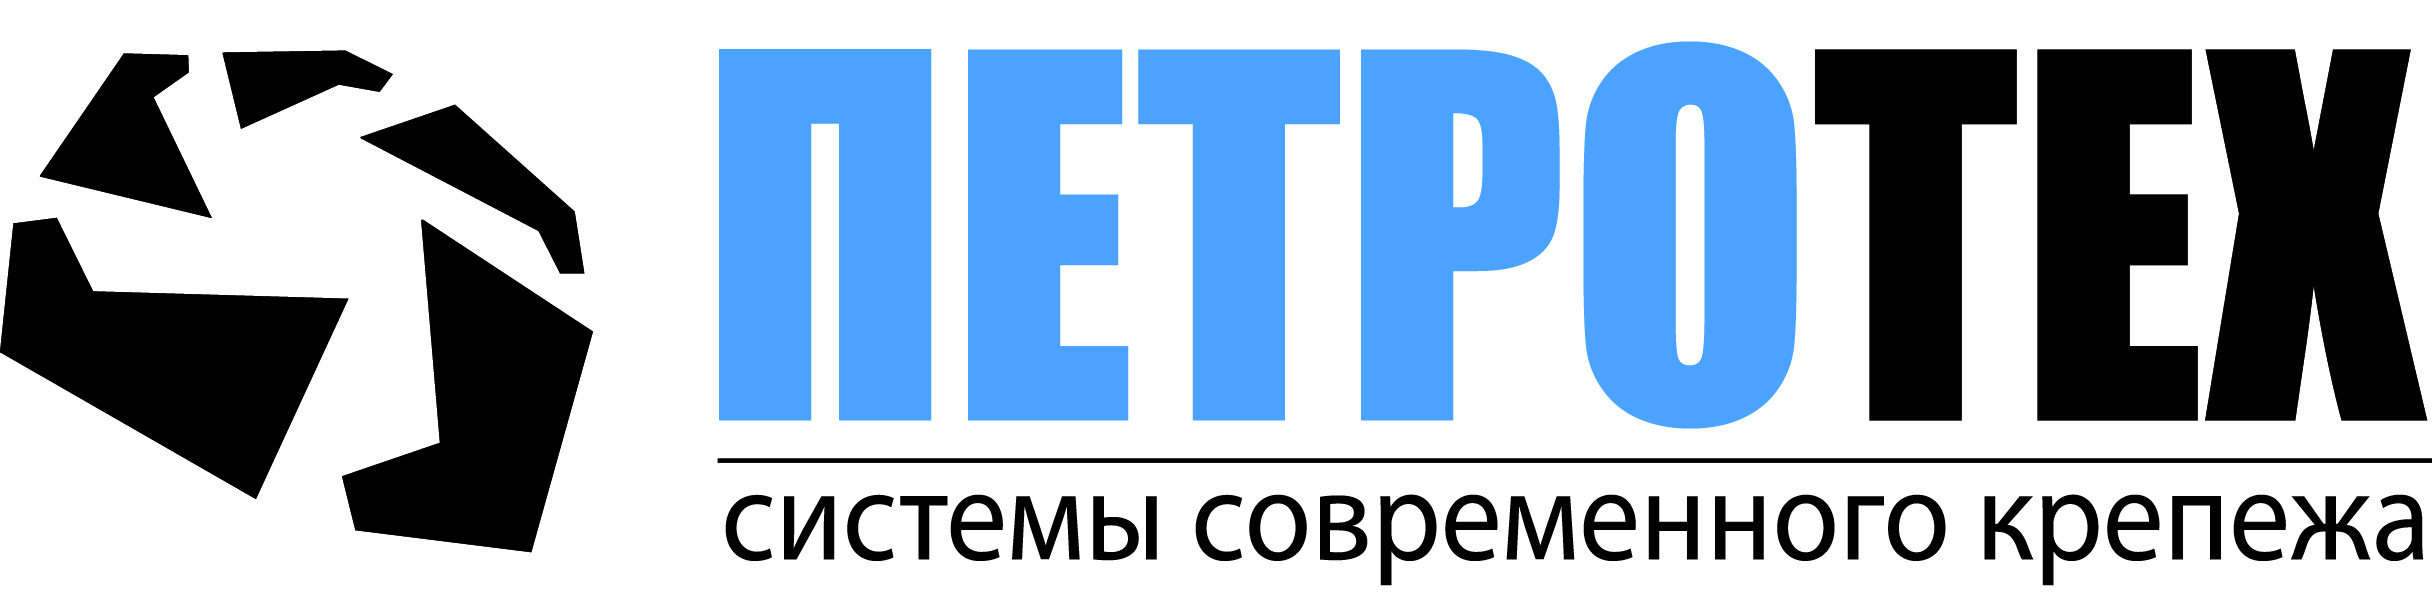 Логотип бренда Петротех